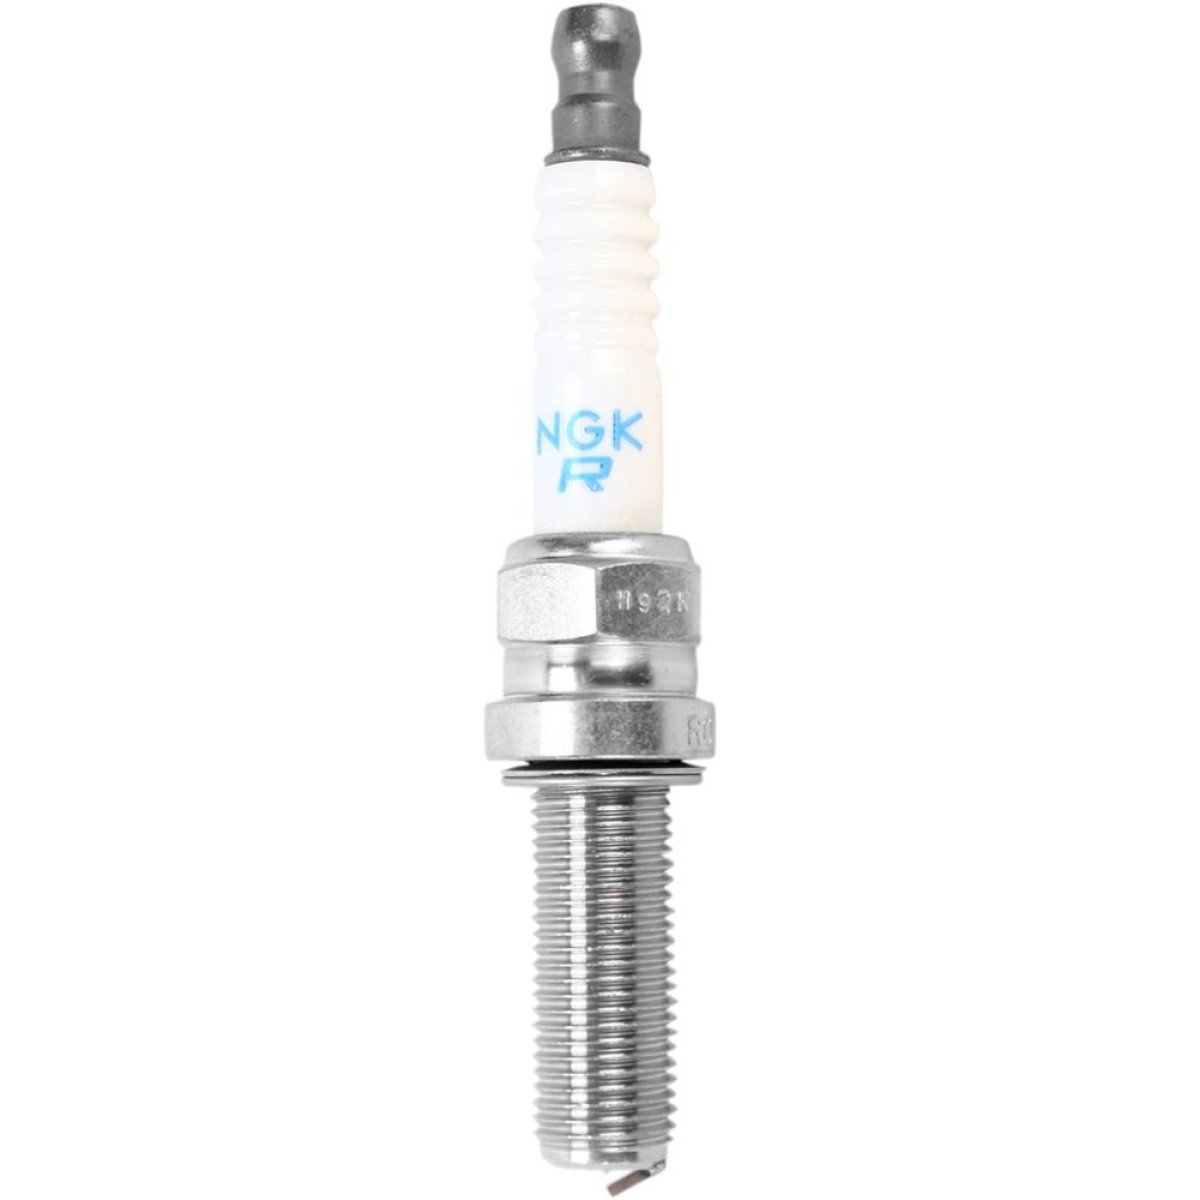 NGK Spark Plug  R0451B-8 Iridium